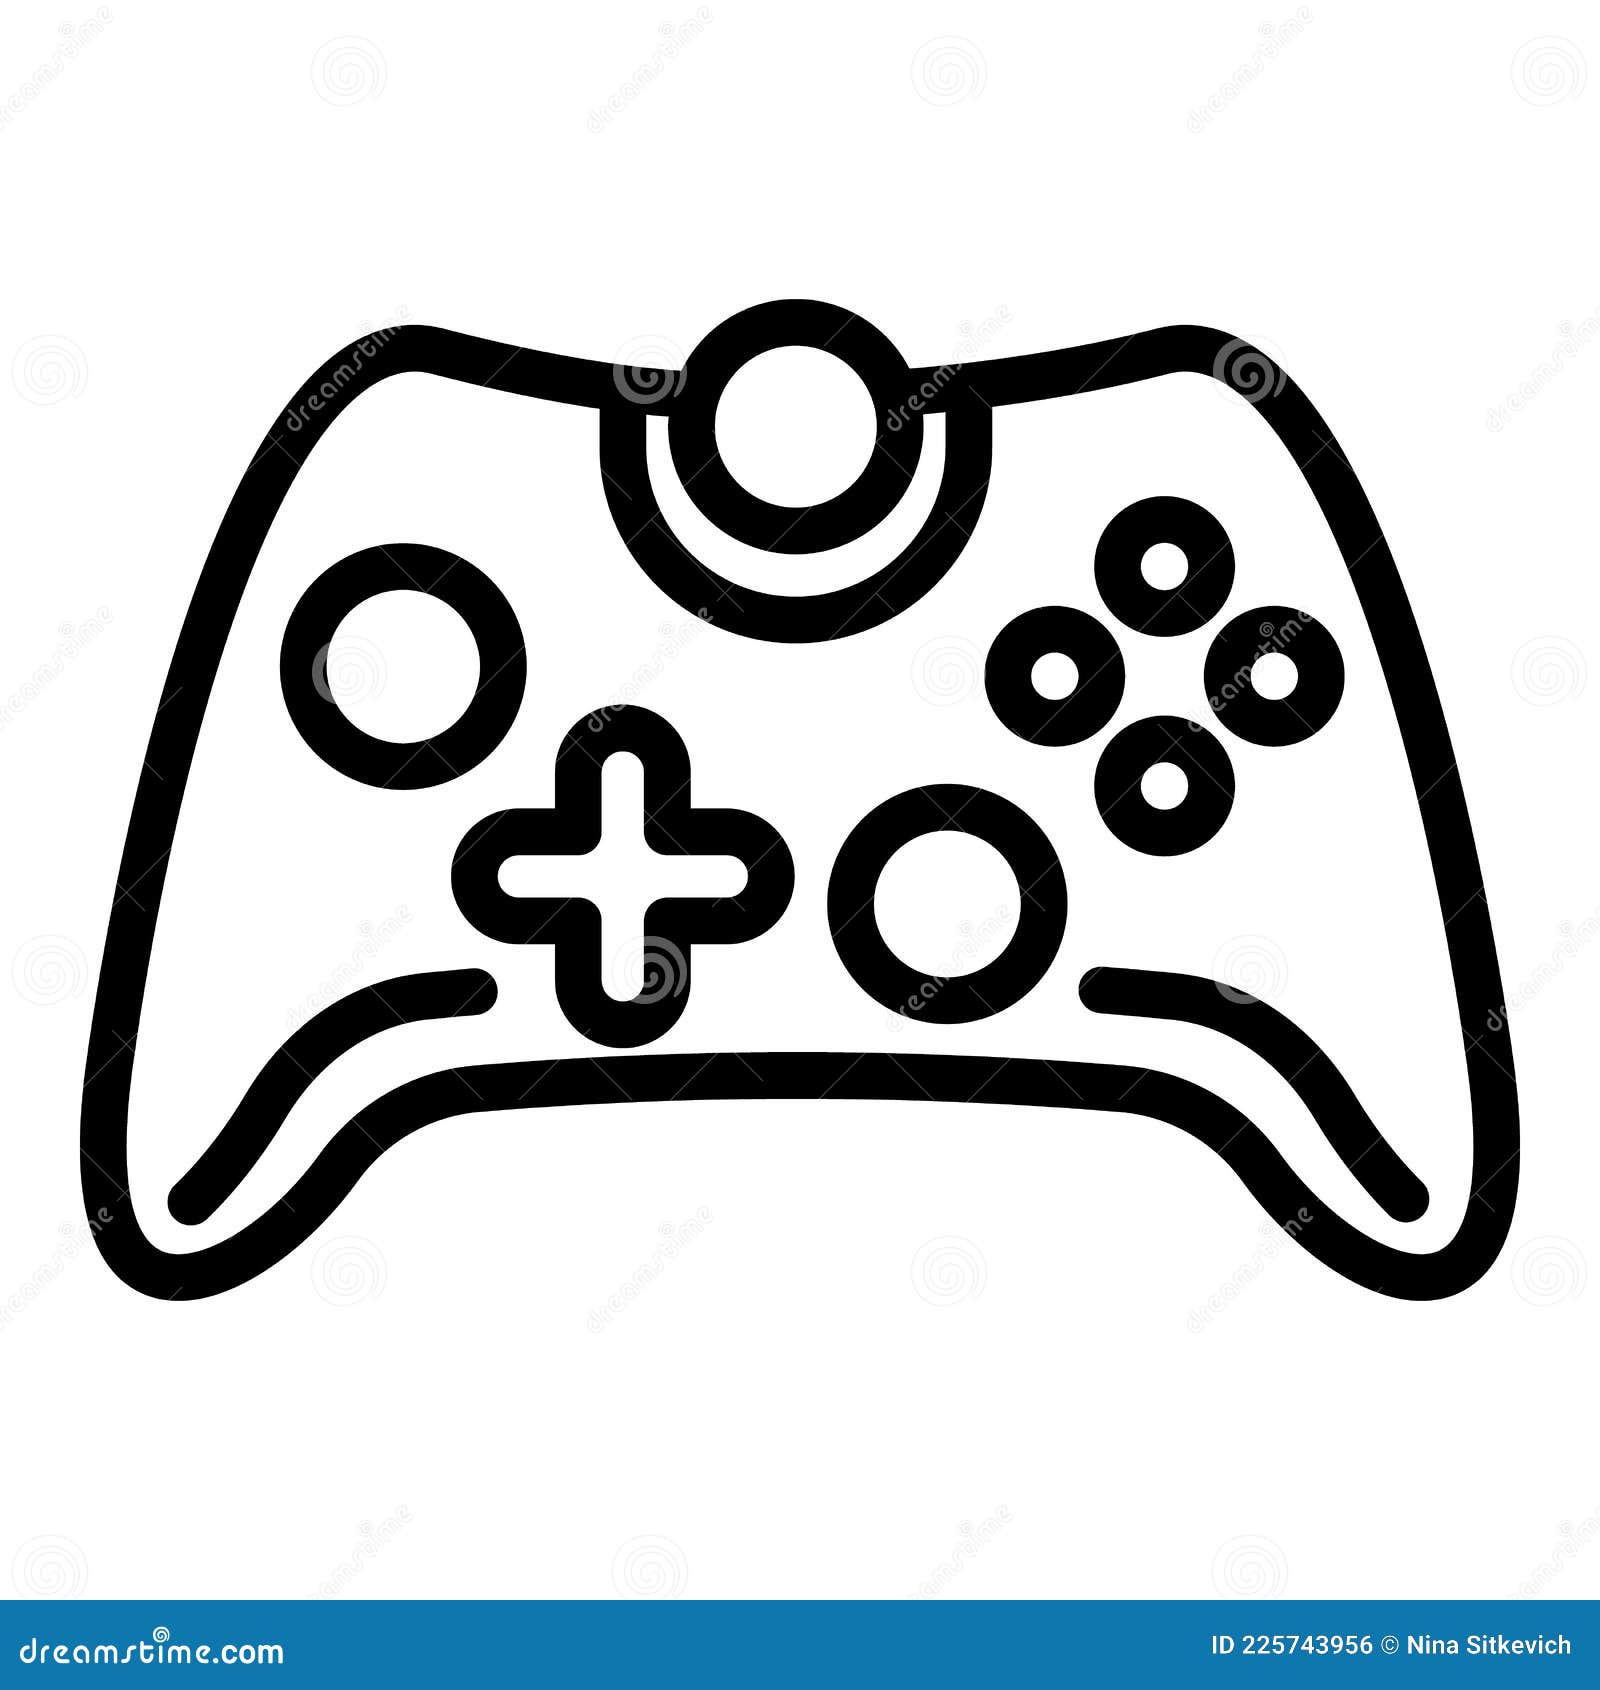 Design de ilustração vetorial de desenho animado de joystick de jogo